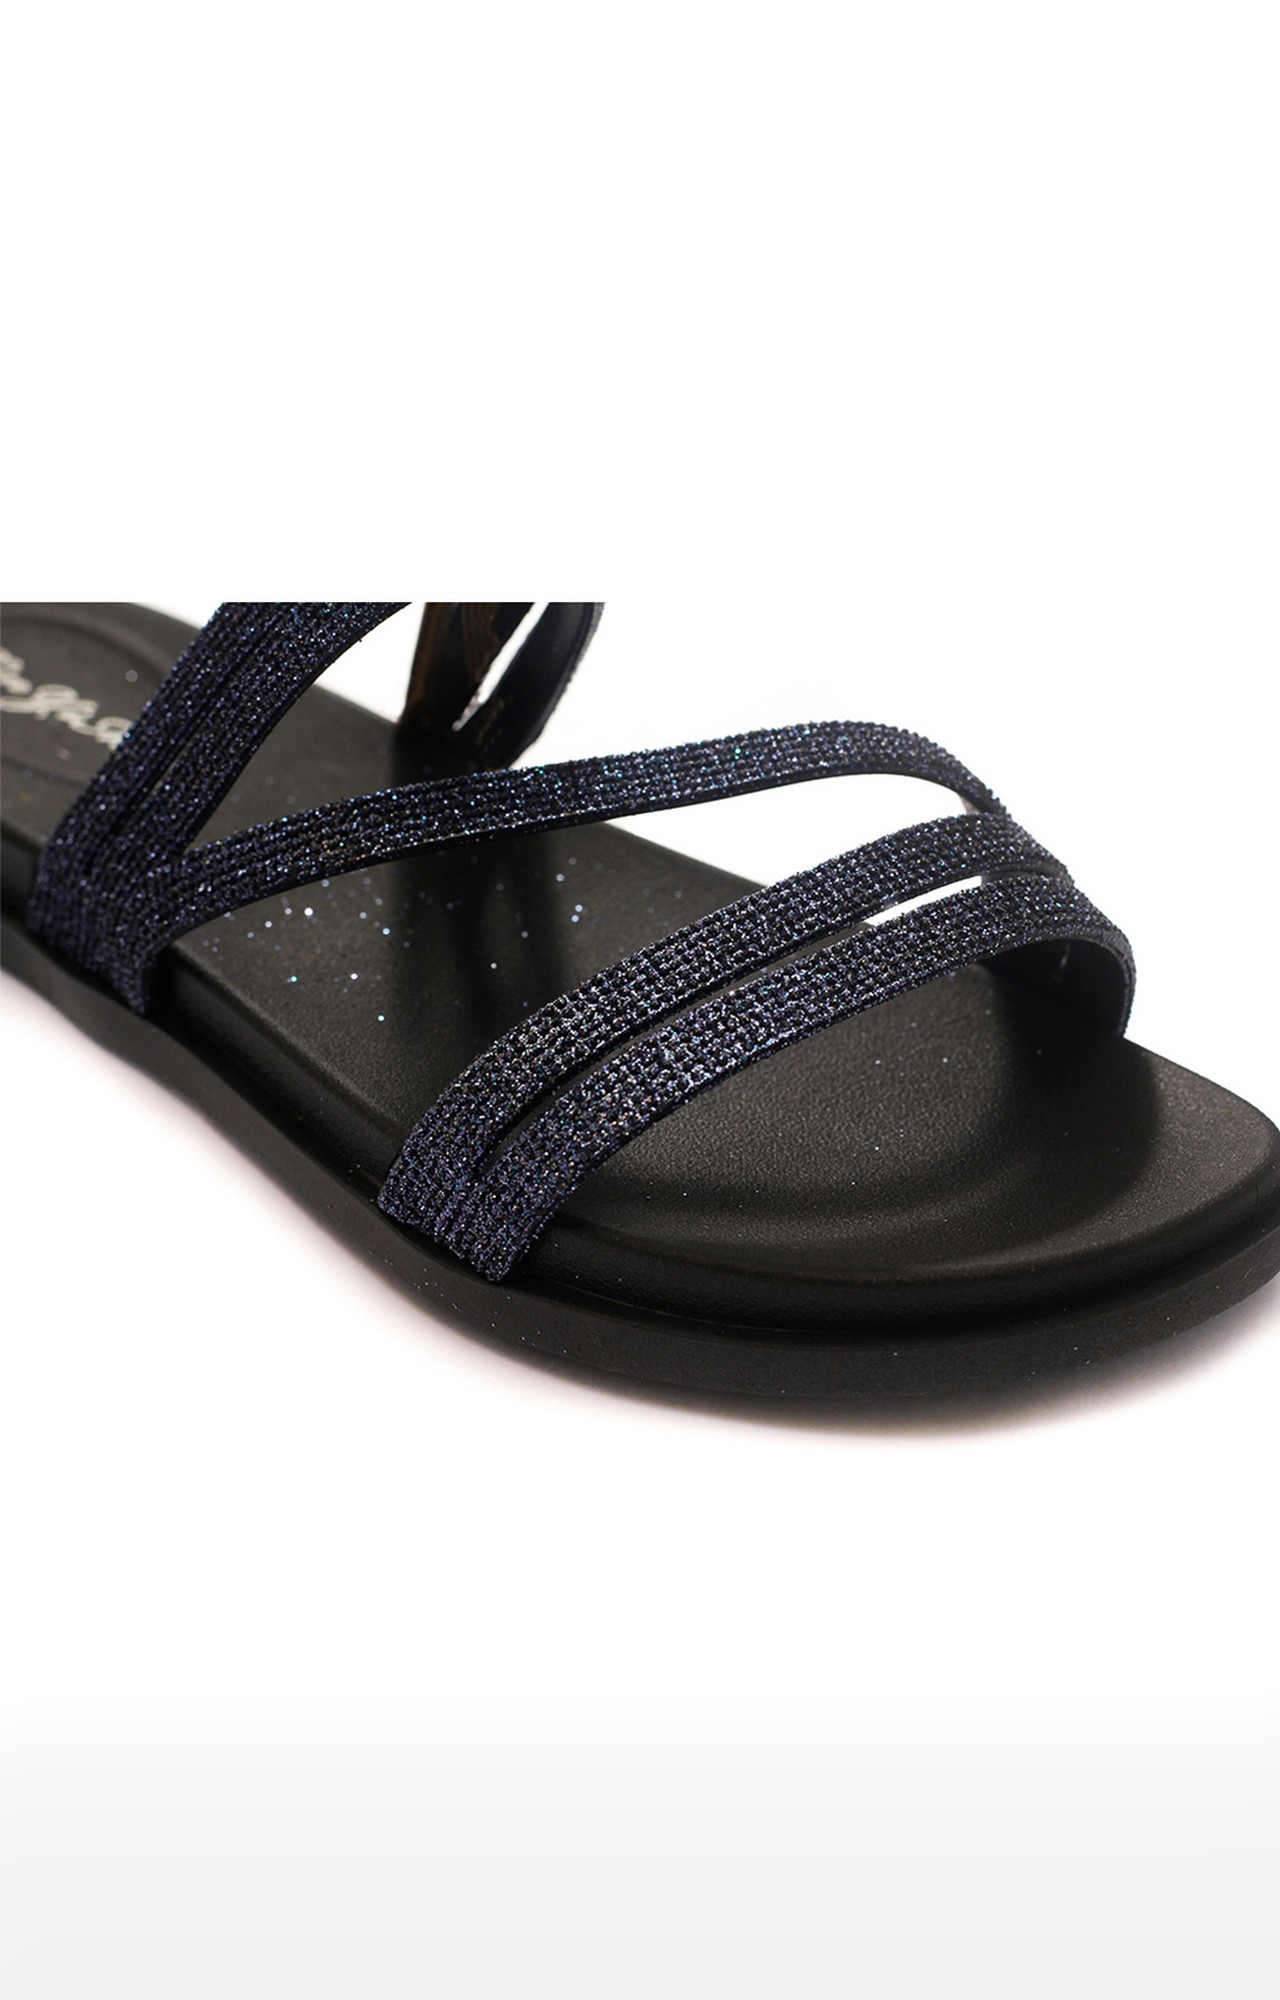 Trends & Trades | Black Flat Slip-Ons Sandal For Women 4